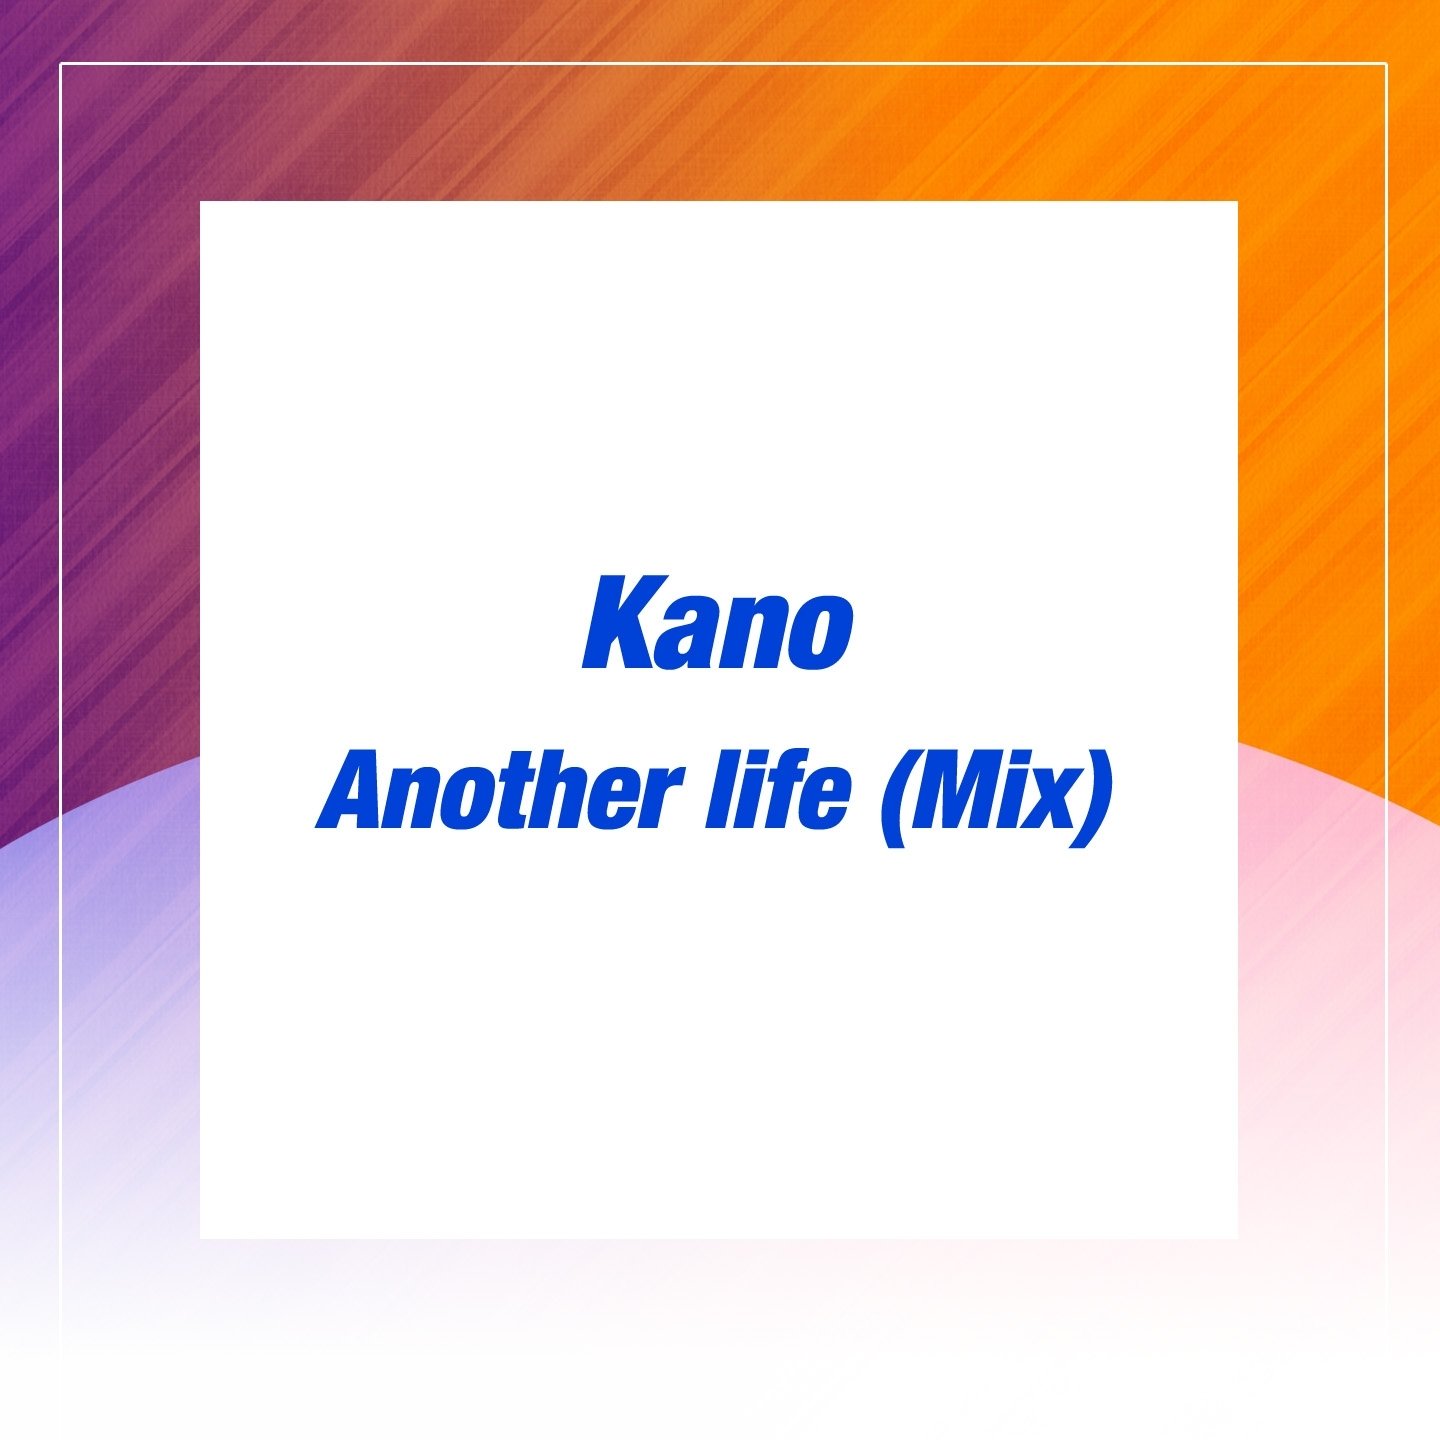 Another life me. Kano another Life. Kano - another Life (1983. Kano - another Life обложка. My Life another.